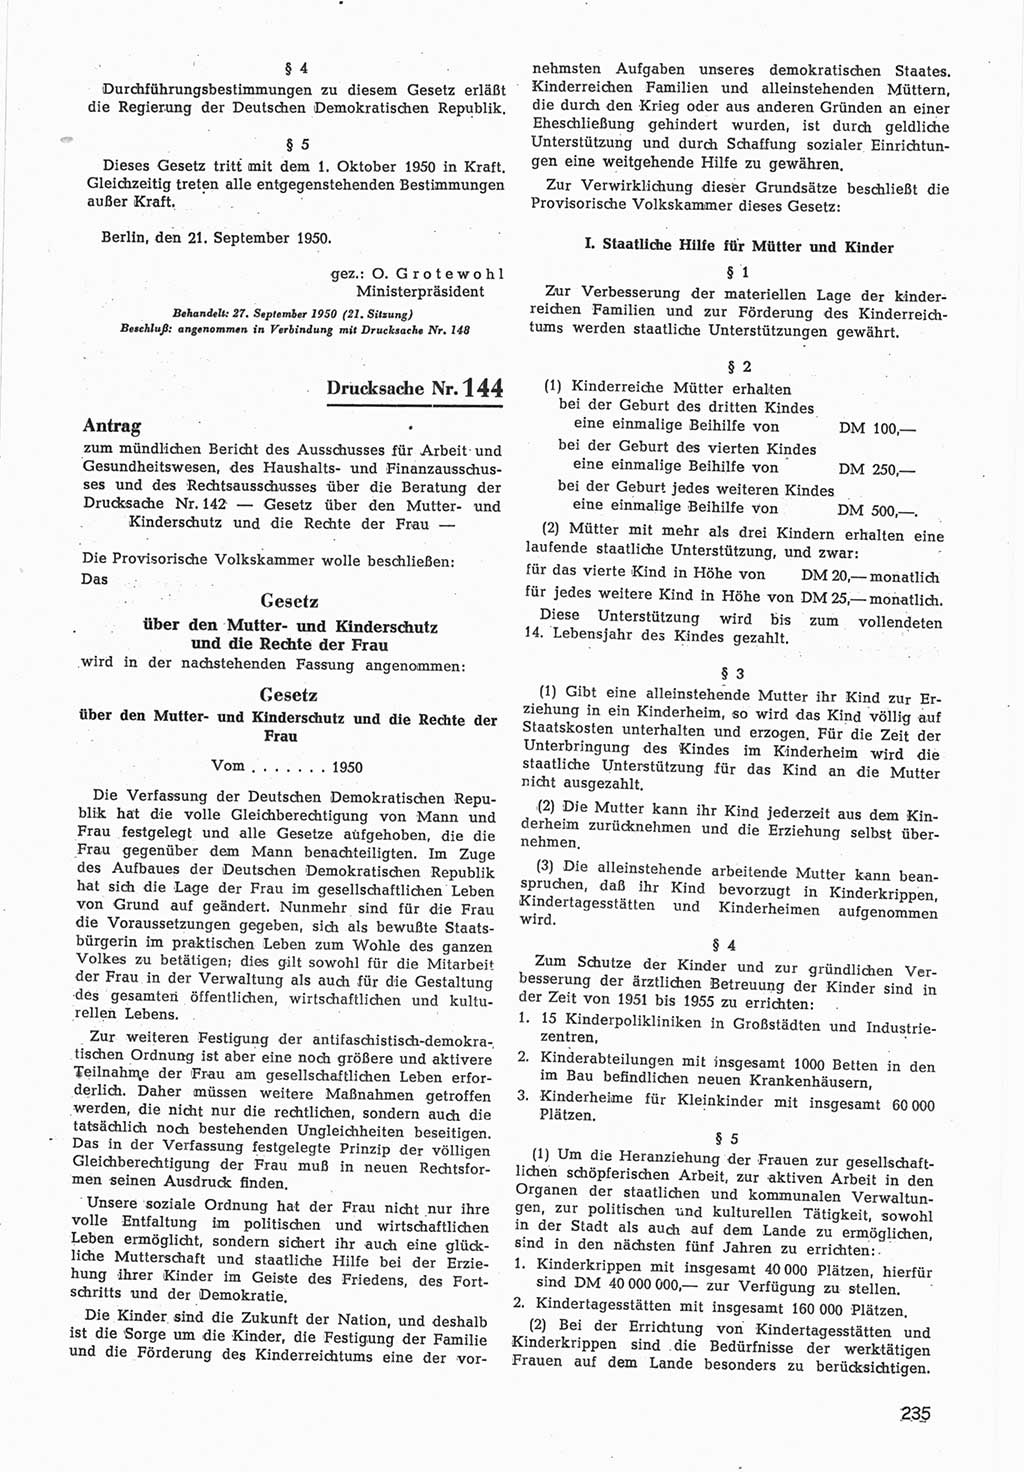 Provisorische Volkskammer (VK) der Deutschen Demokratischen Republik (DDR) 1949-1950, Dokument 837 (Prov. VK DDR 1949-1950, Dok. 837)